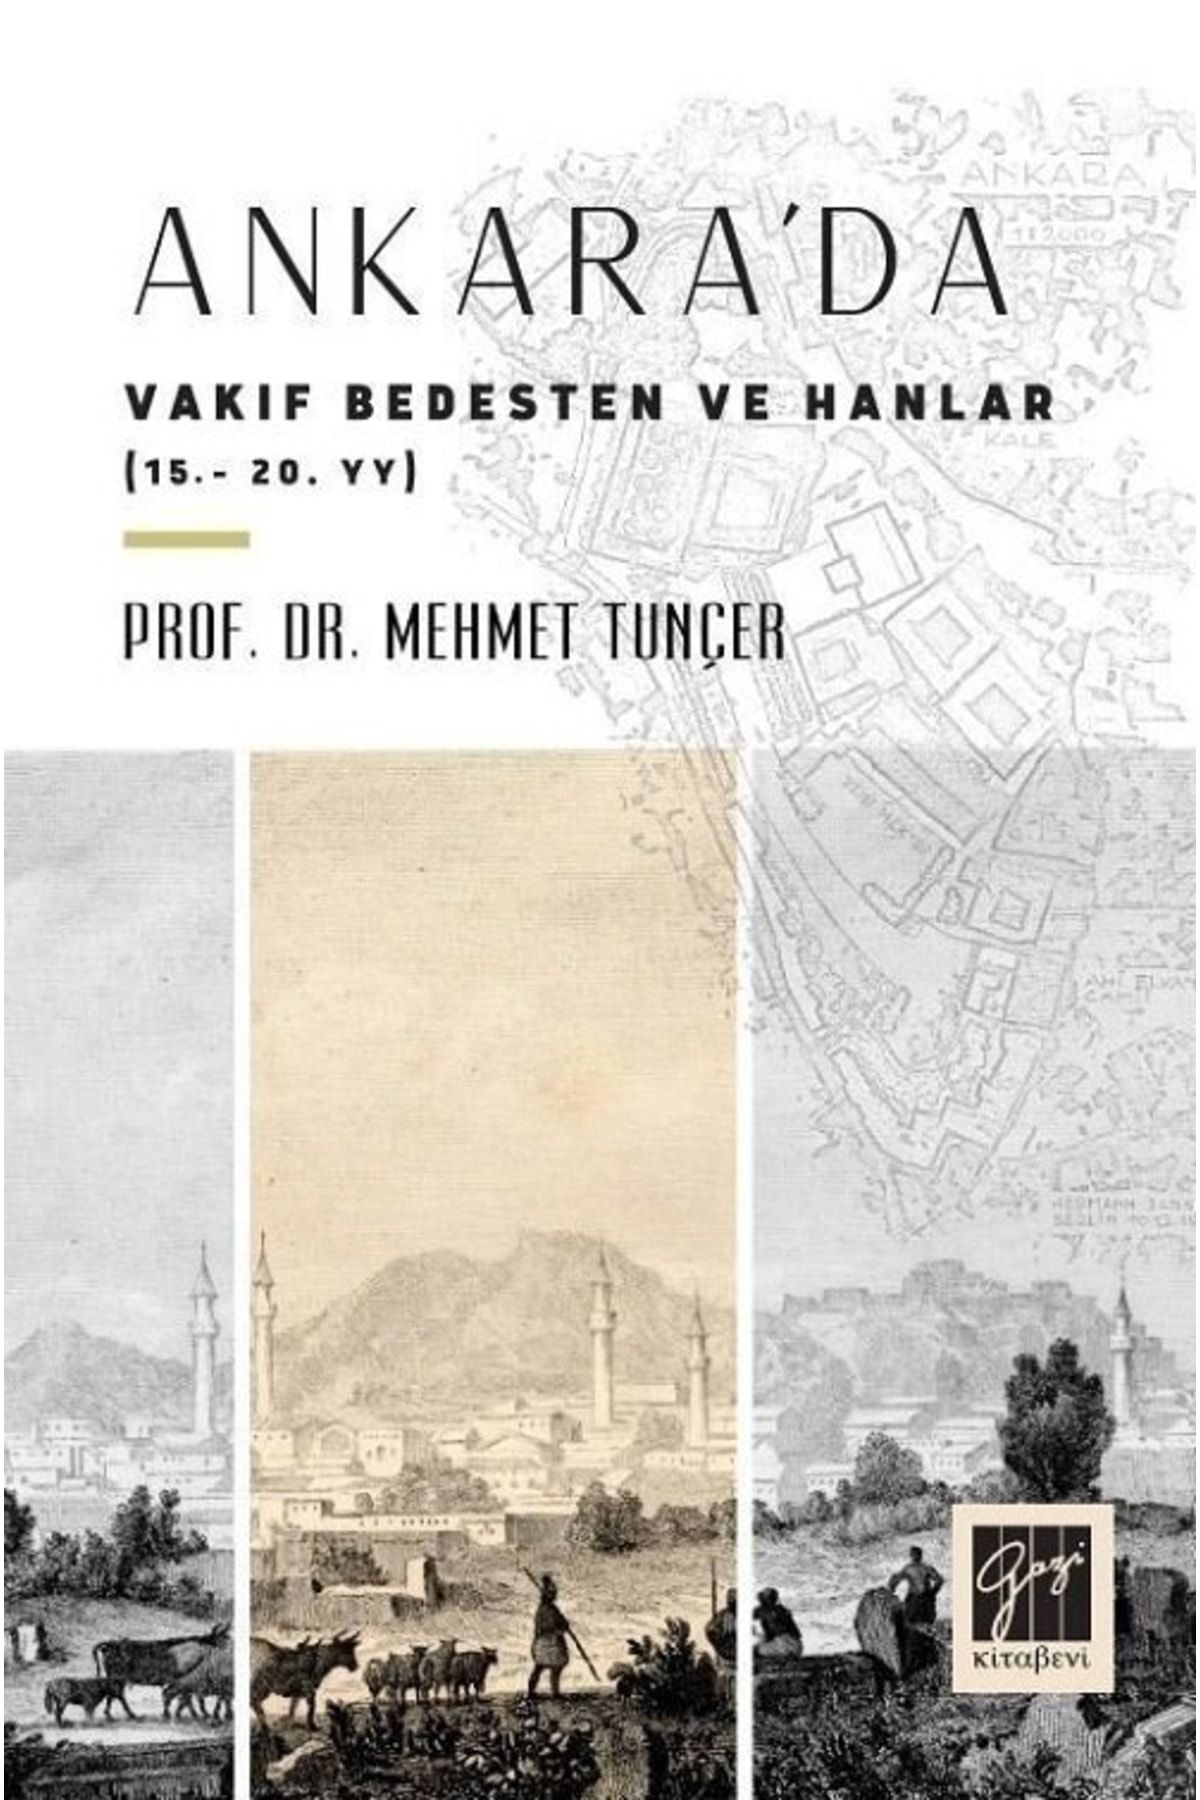 Gazi Kitabevi Ankara'da Vakıf Bedesten Ve Hanlar (15-20. Yy)-prof. Dr. Mehmet Tunçer